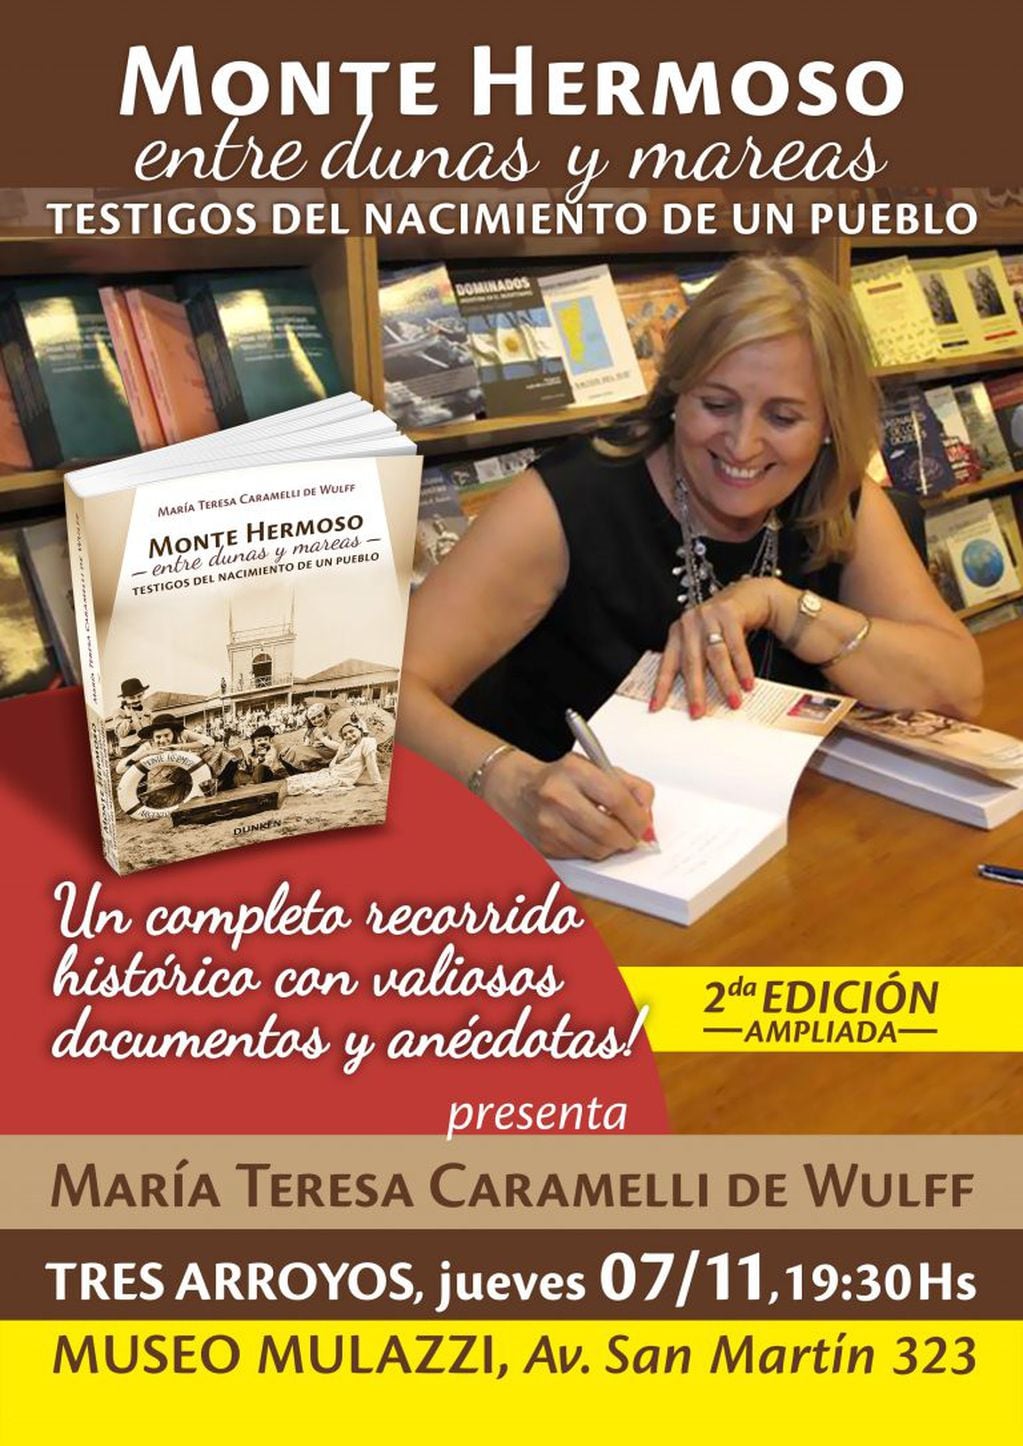 María Teresa Caramelli de Wulff (prensa)